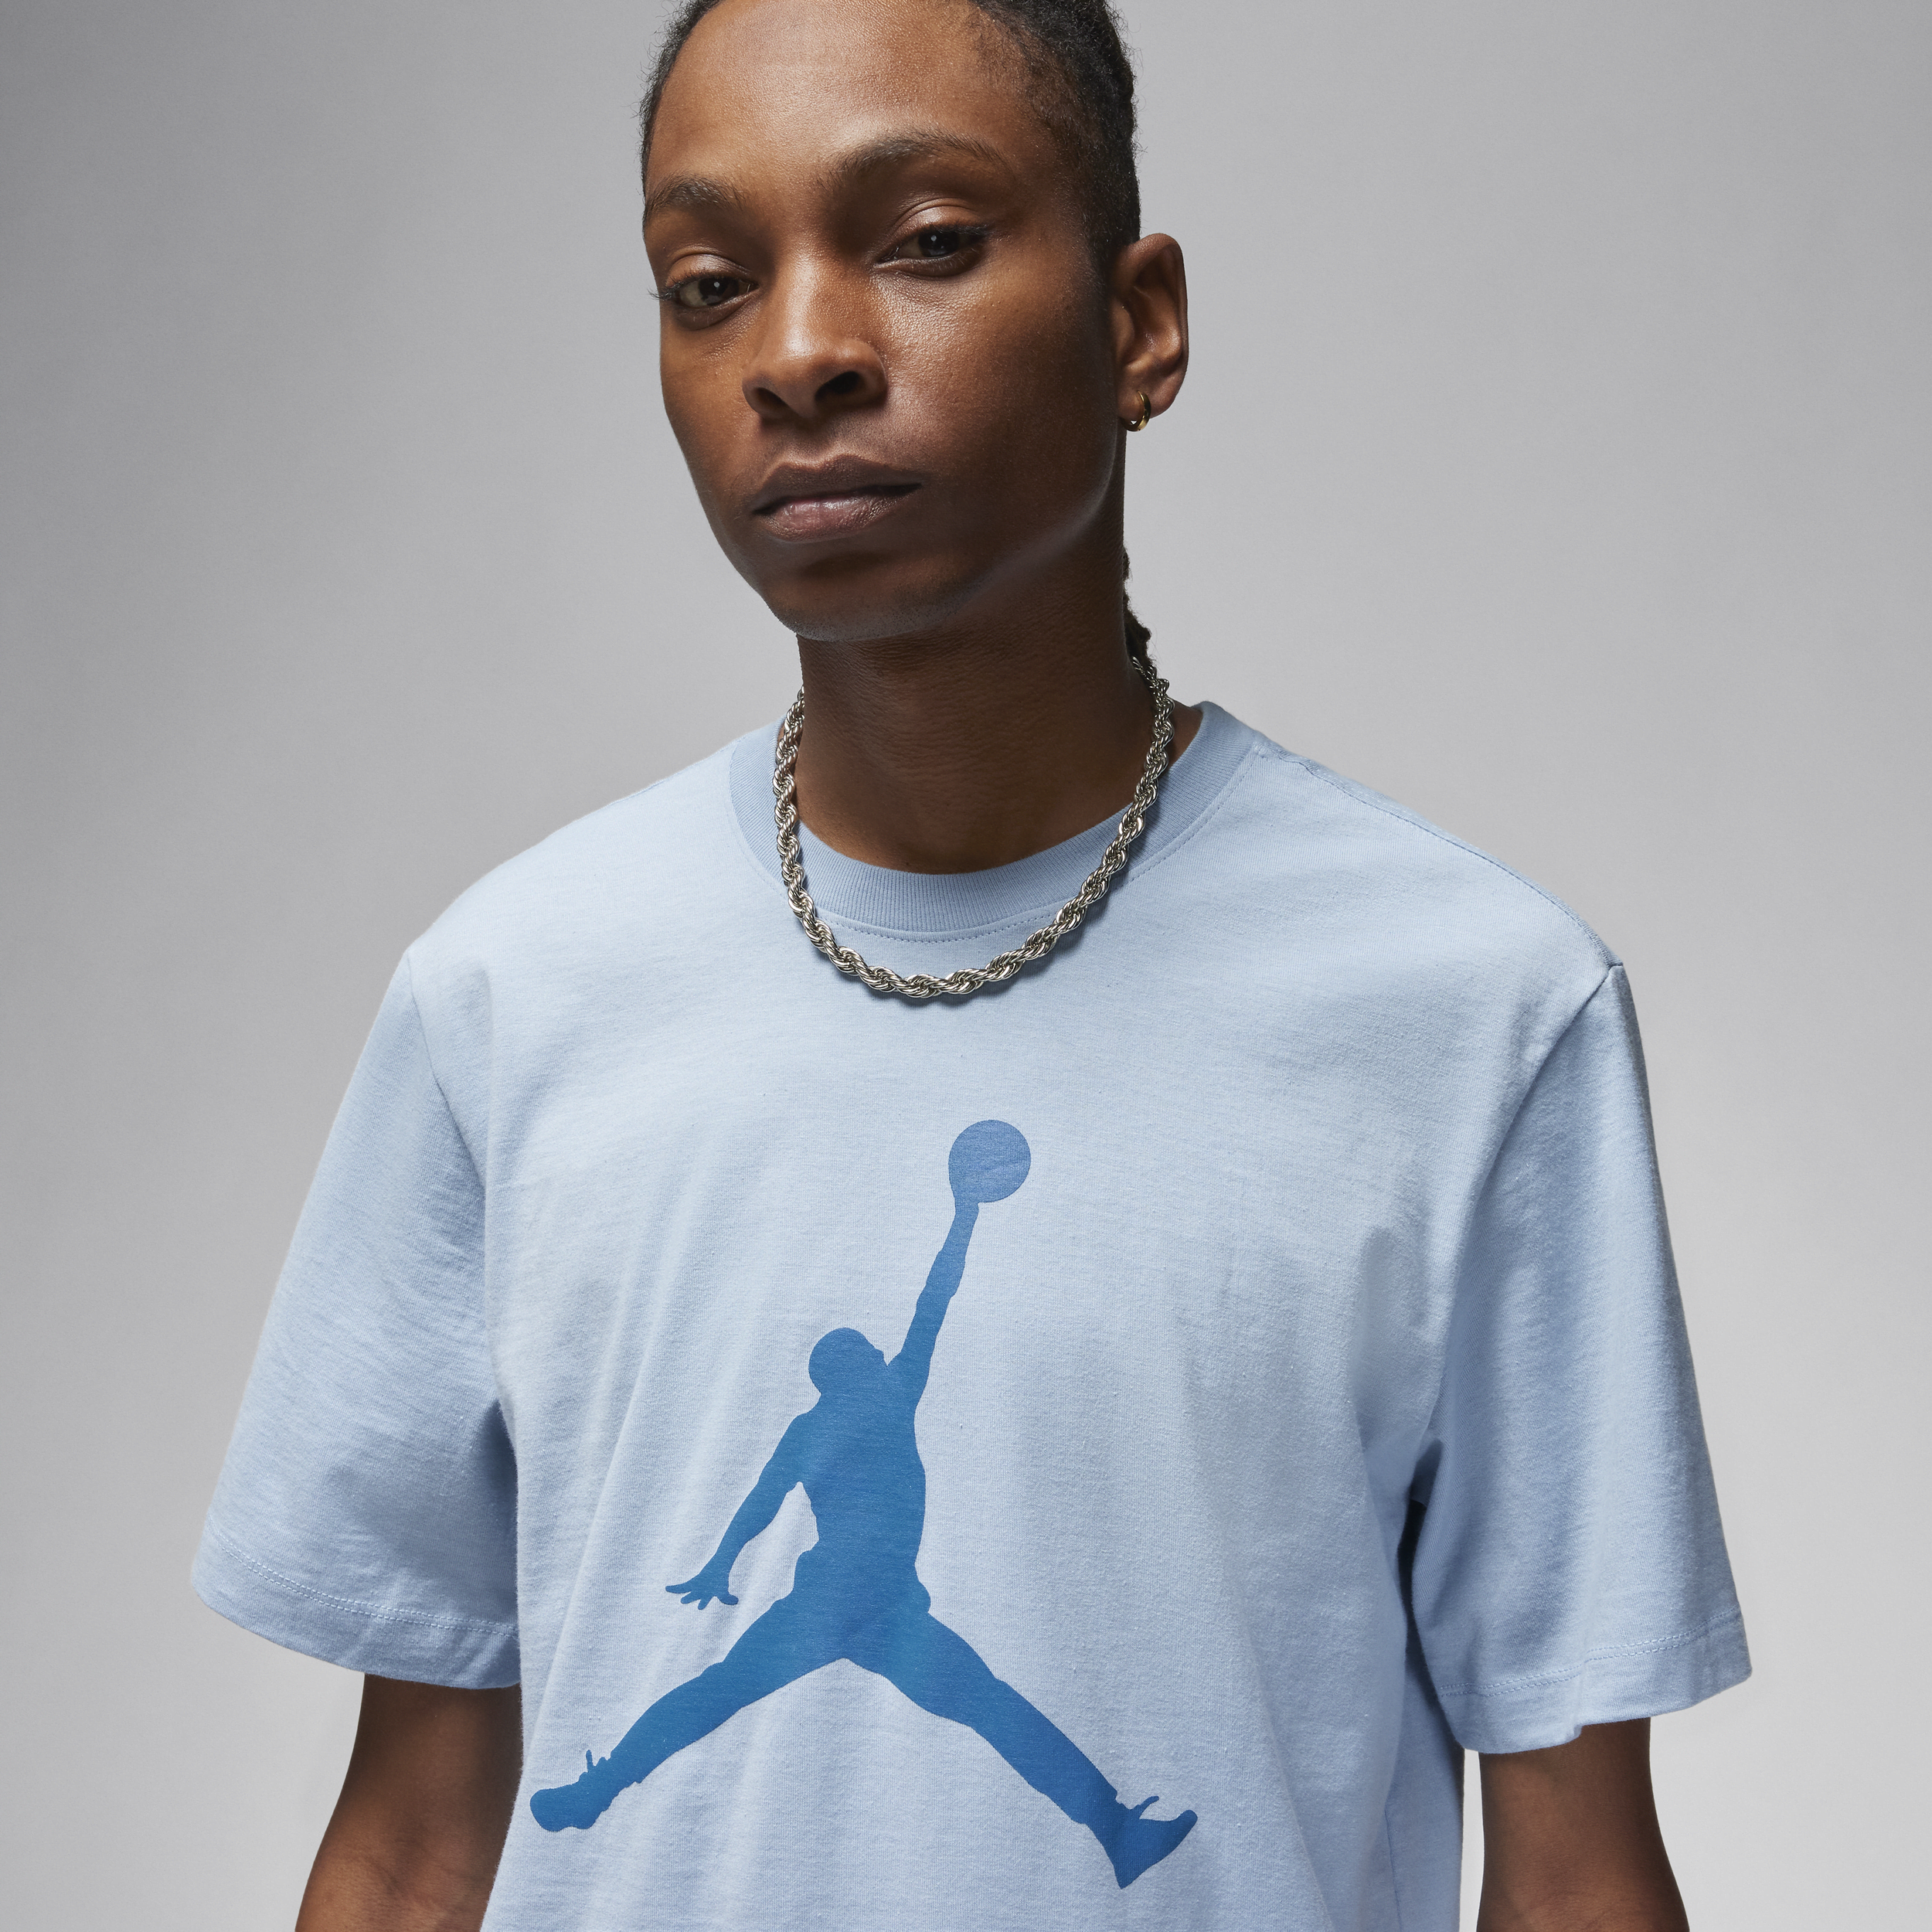 Jordan Jumpman T-shirt voor heren Blauw